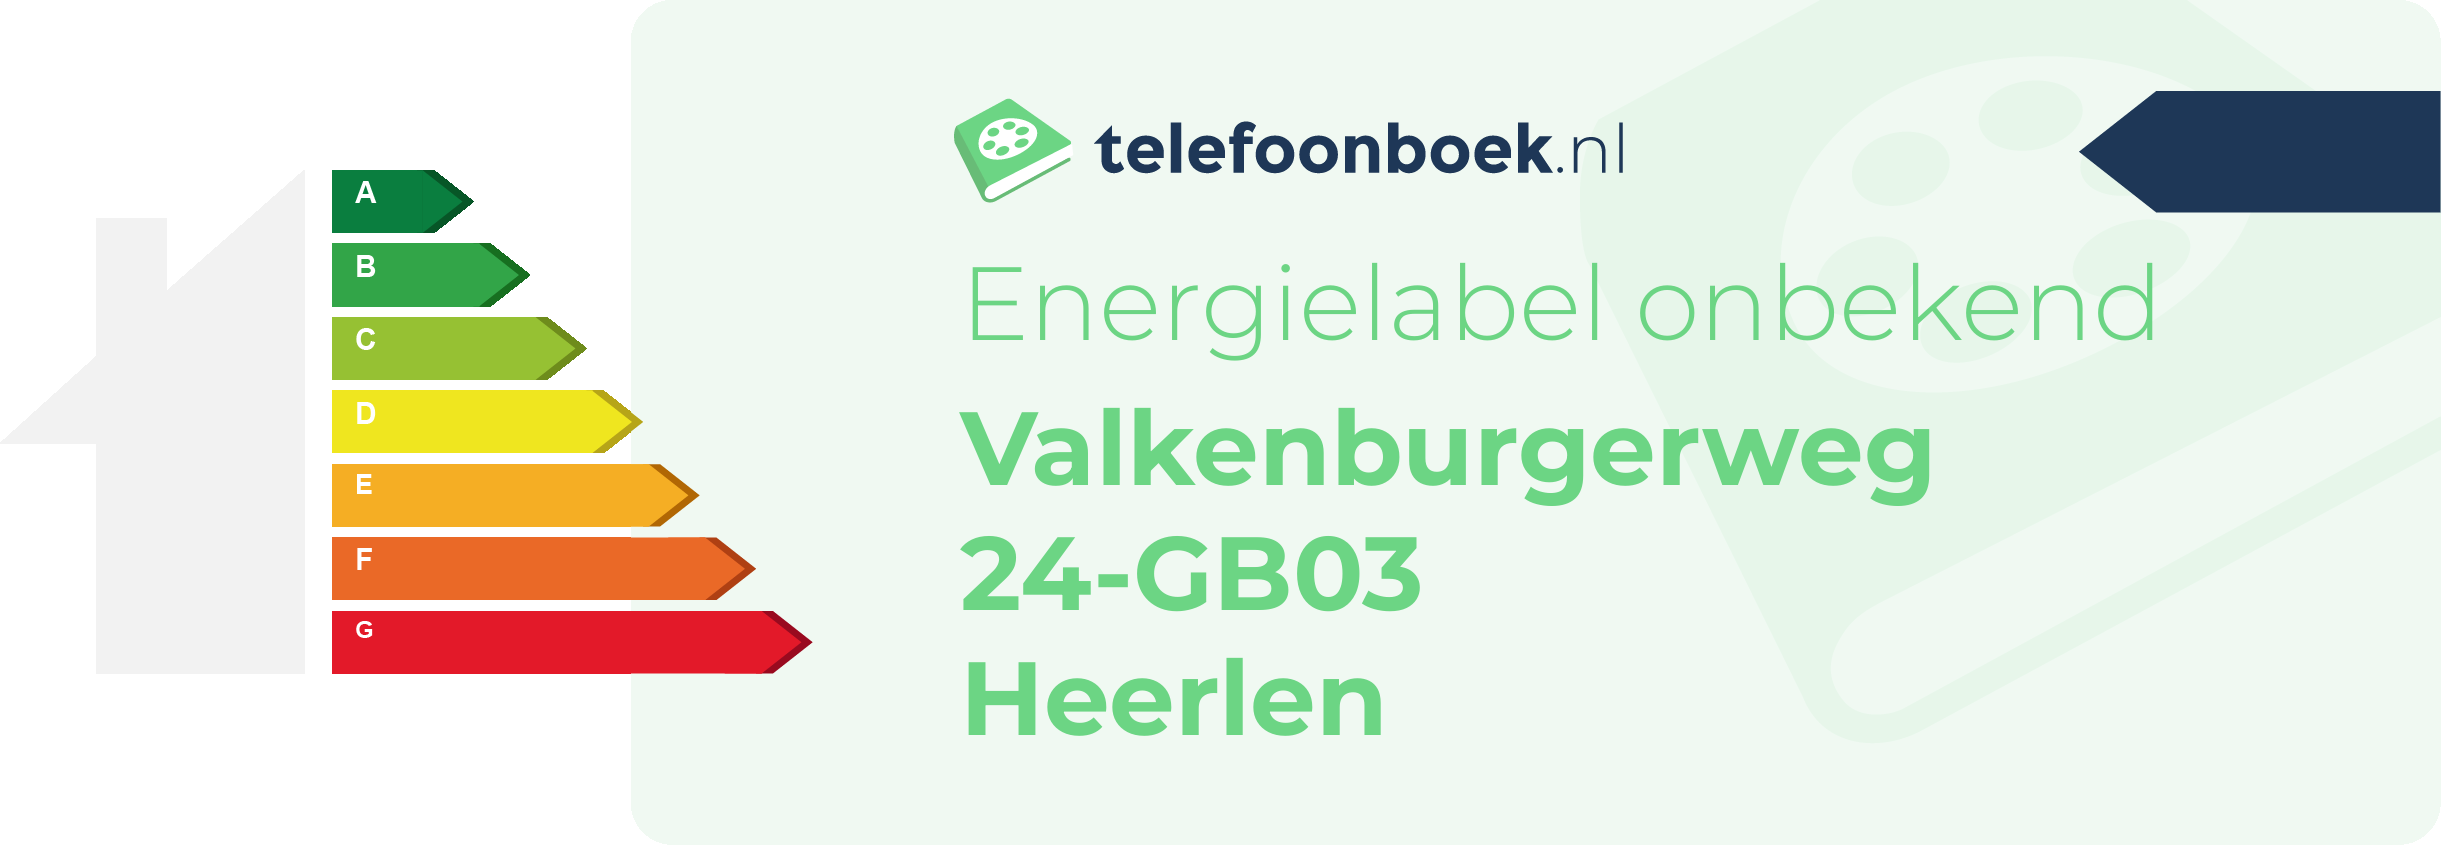 Energielabel Valkenburgerweg 24-GB03 Heerlen